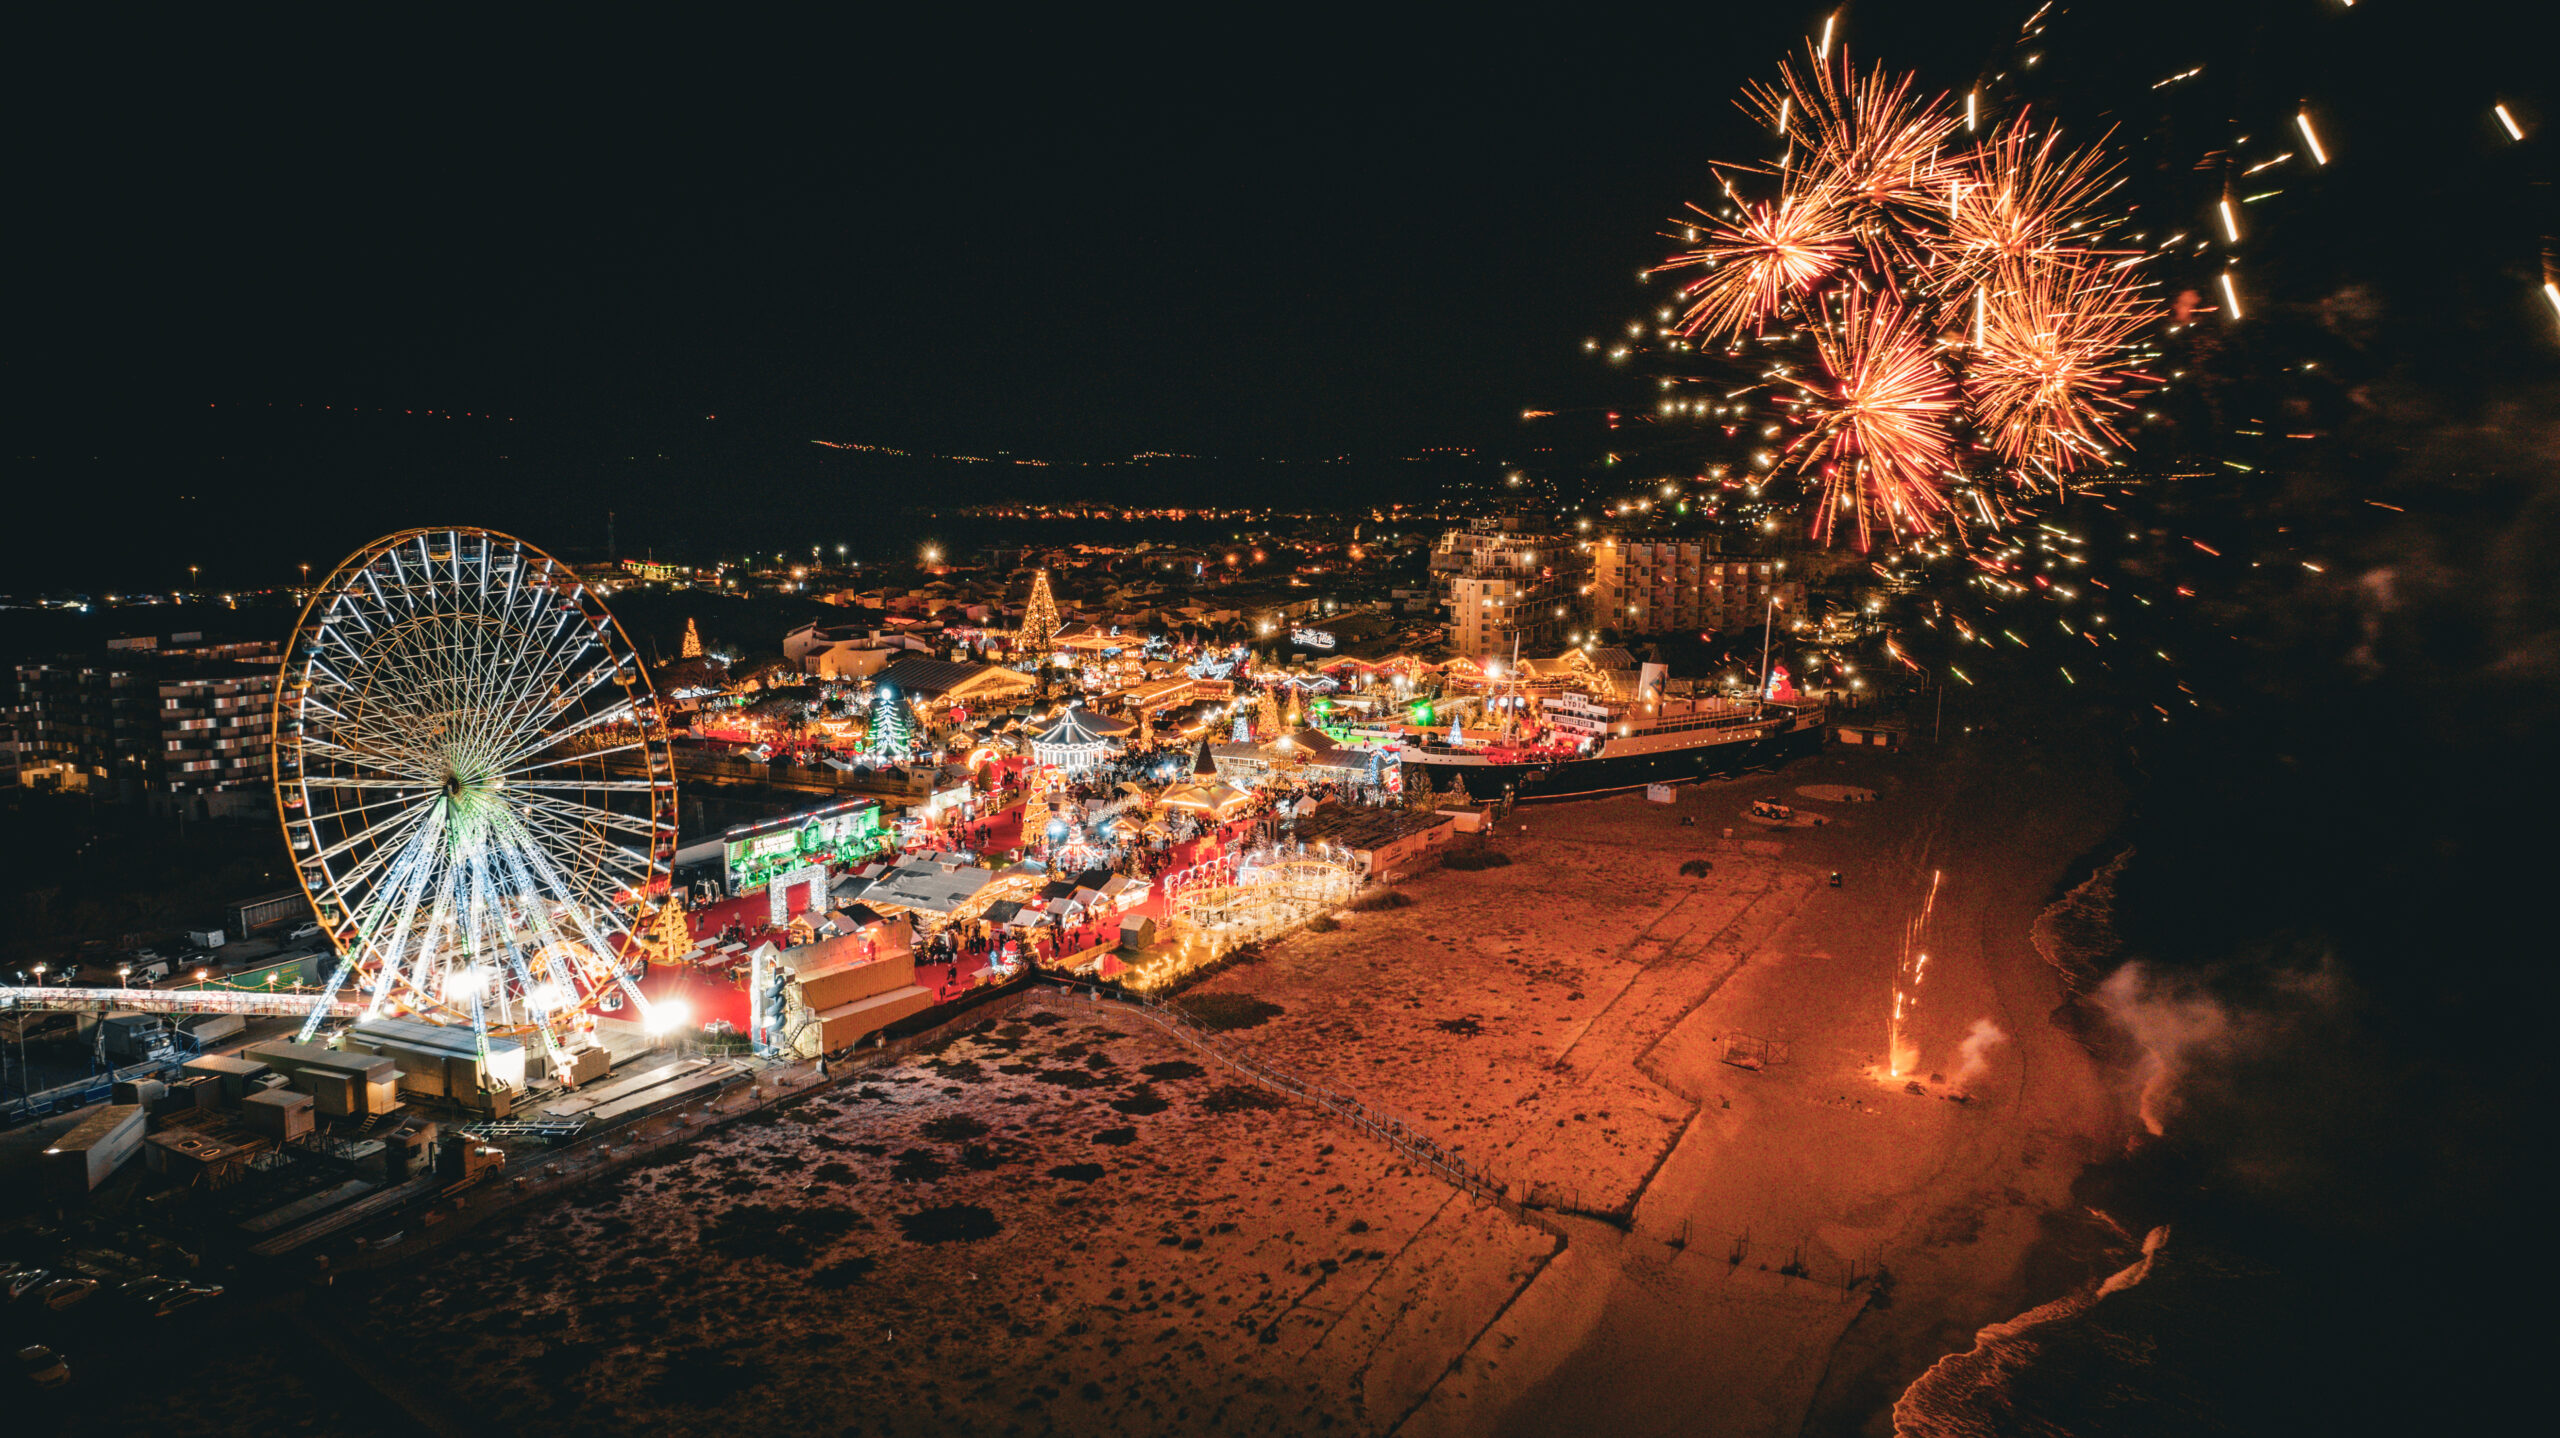 Vue aérienne du marché de Noël du Barcarès avec son feu d'artifice